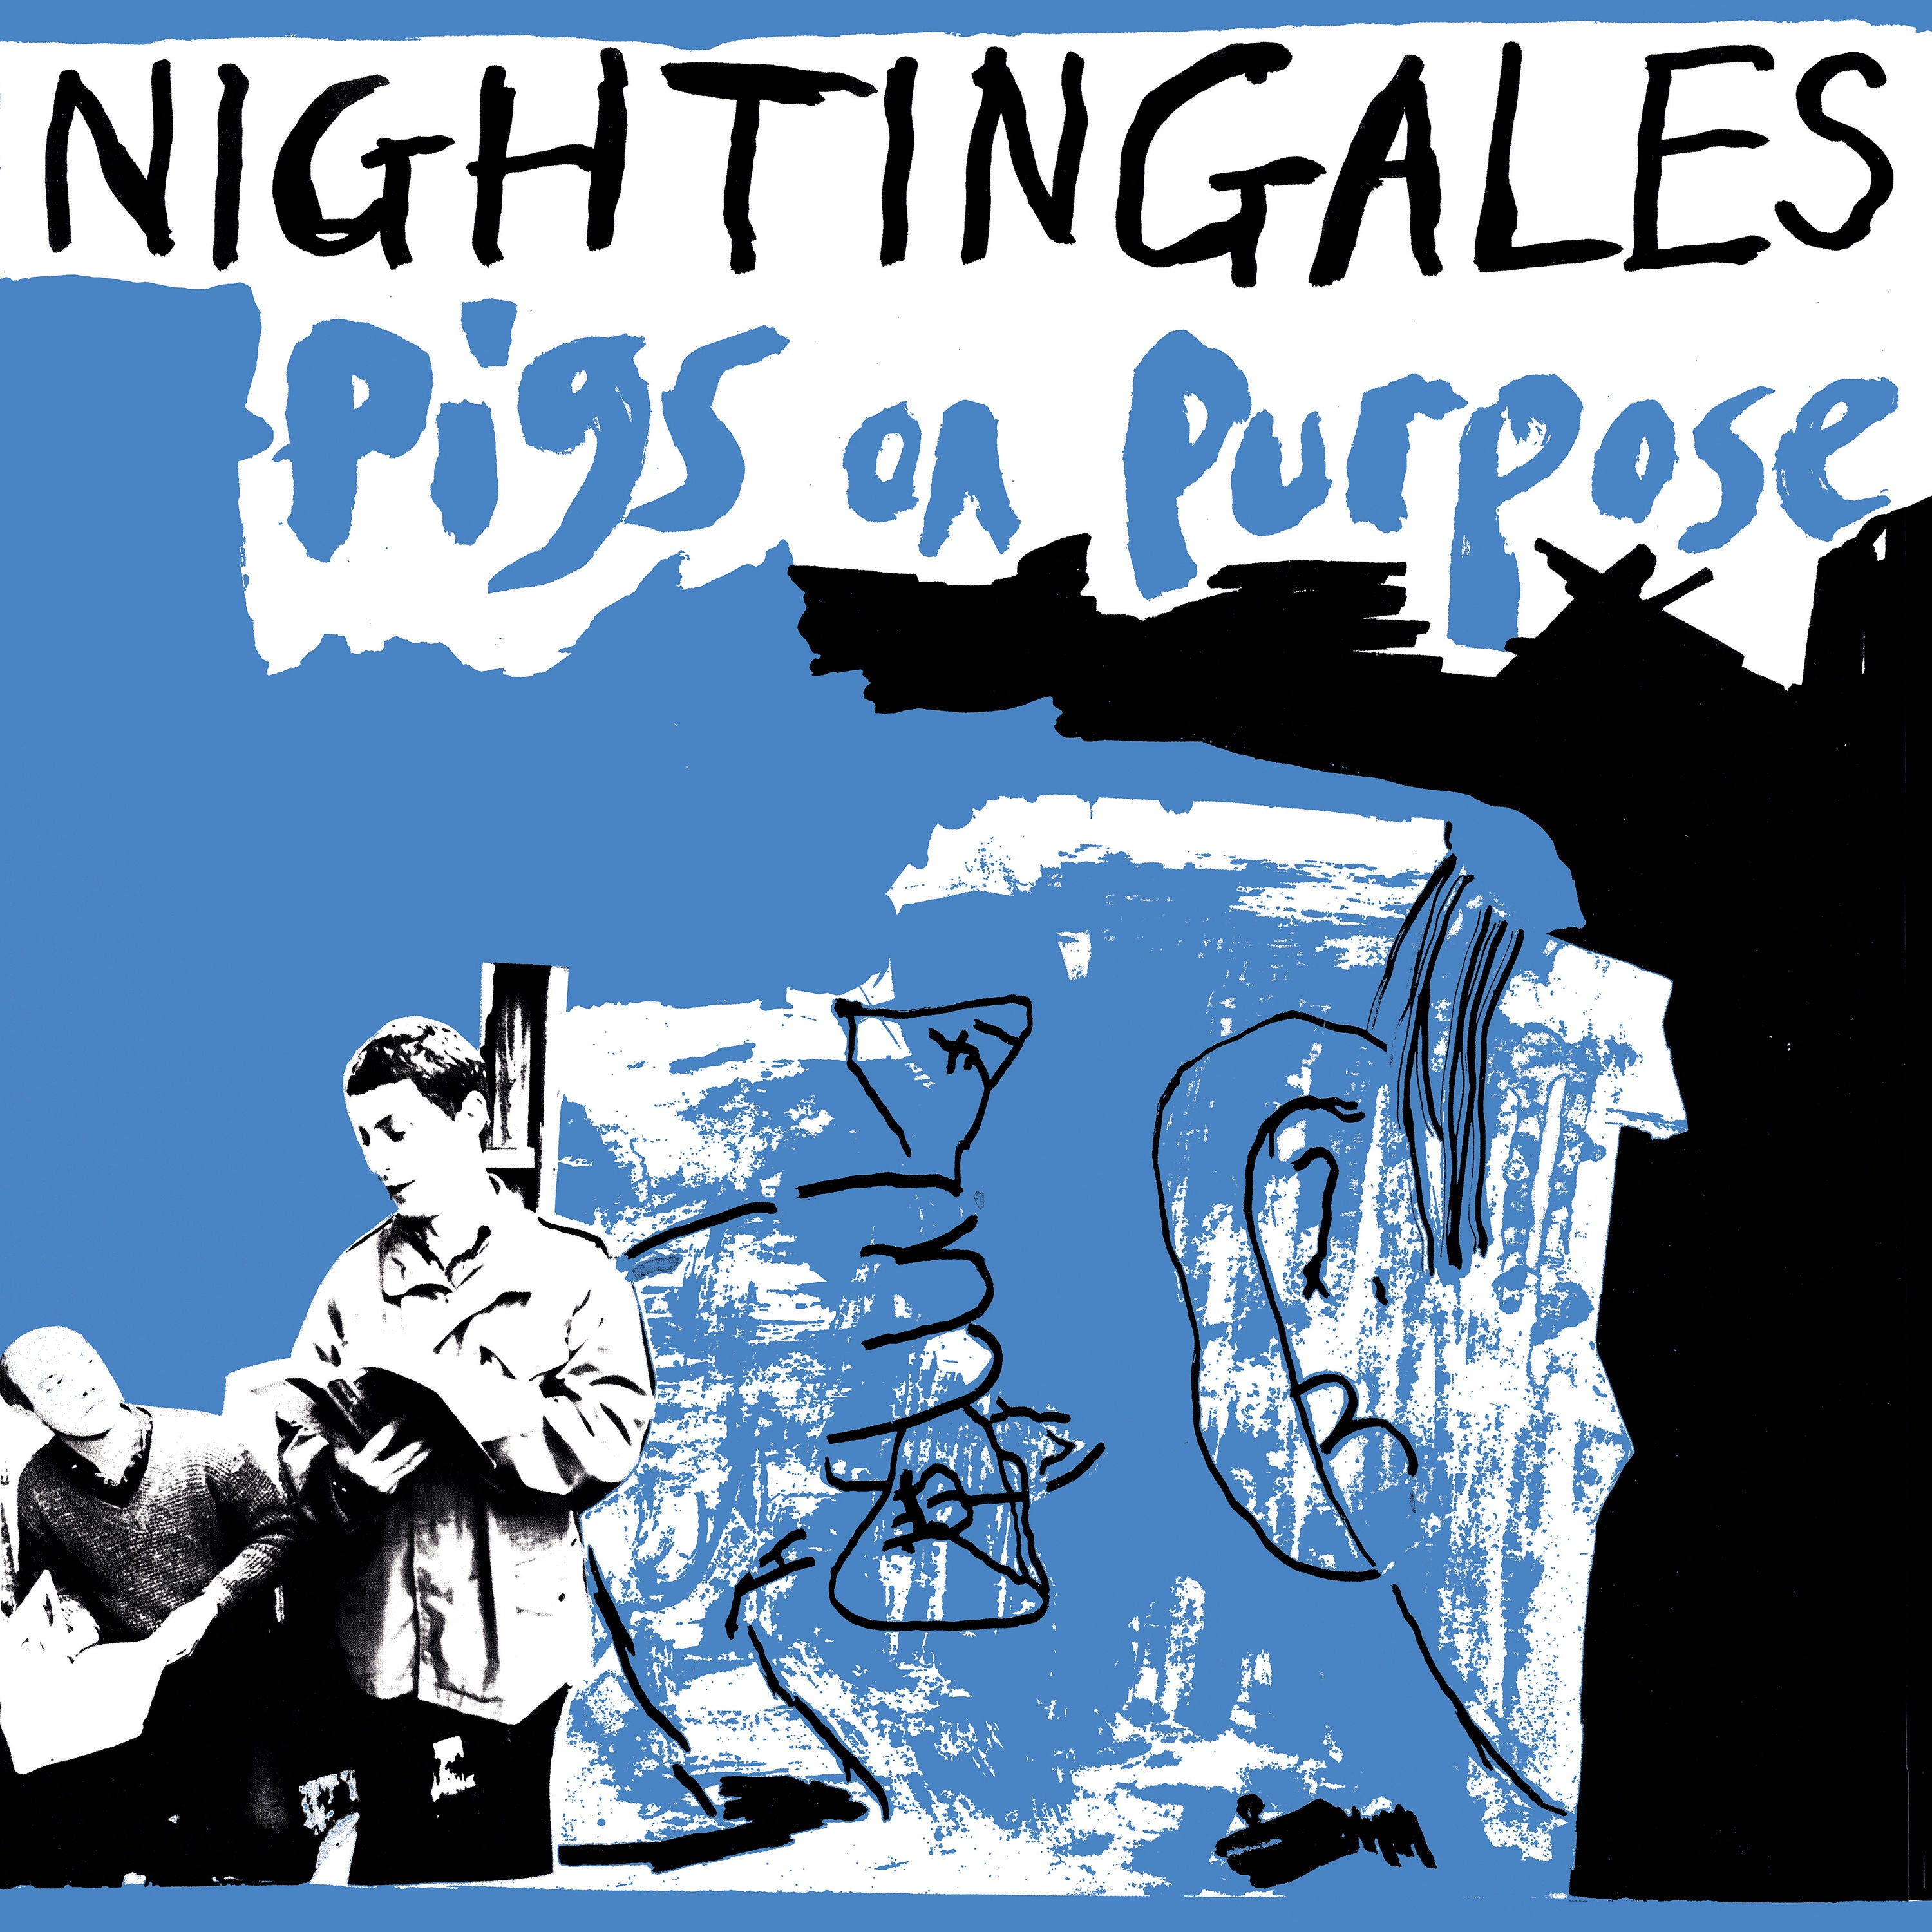 The Nightingales - Pigs on Purpose: 2CD